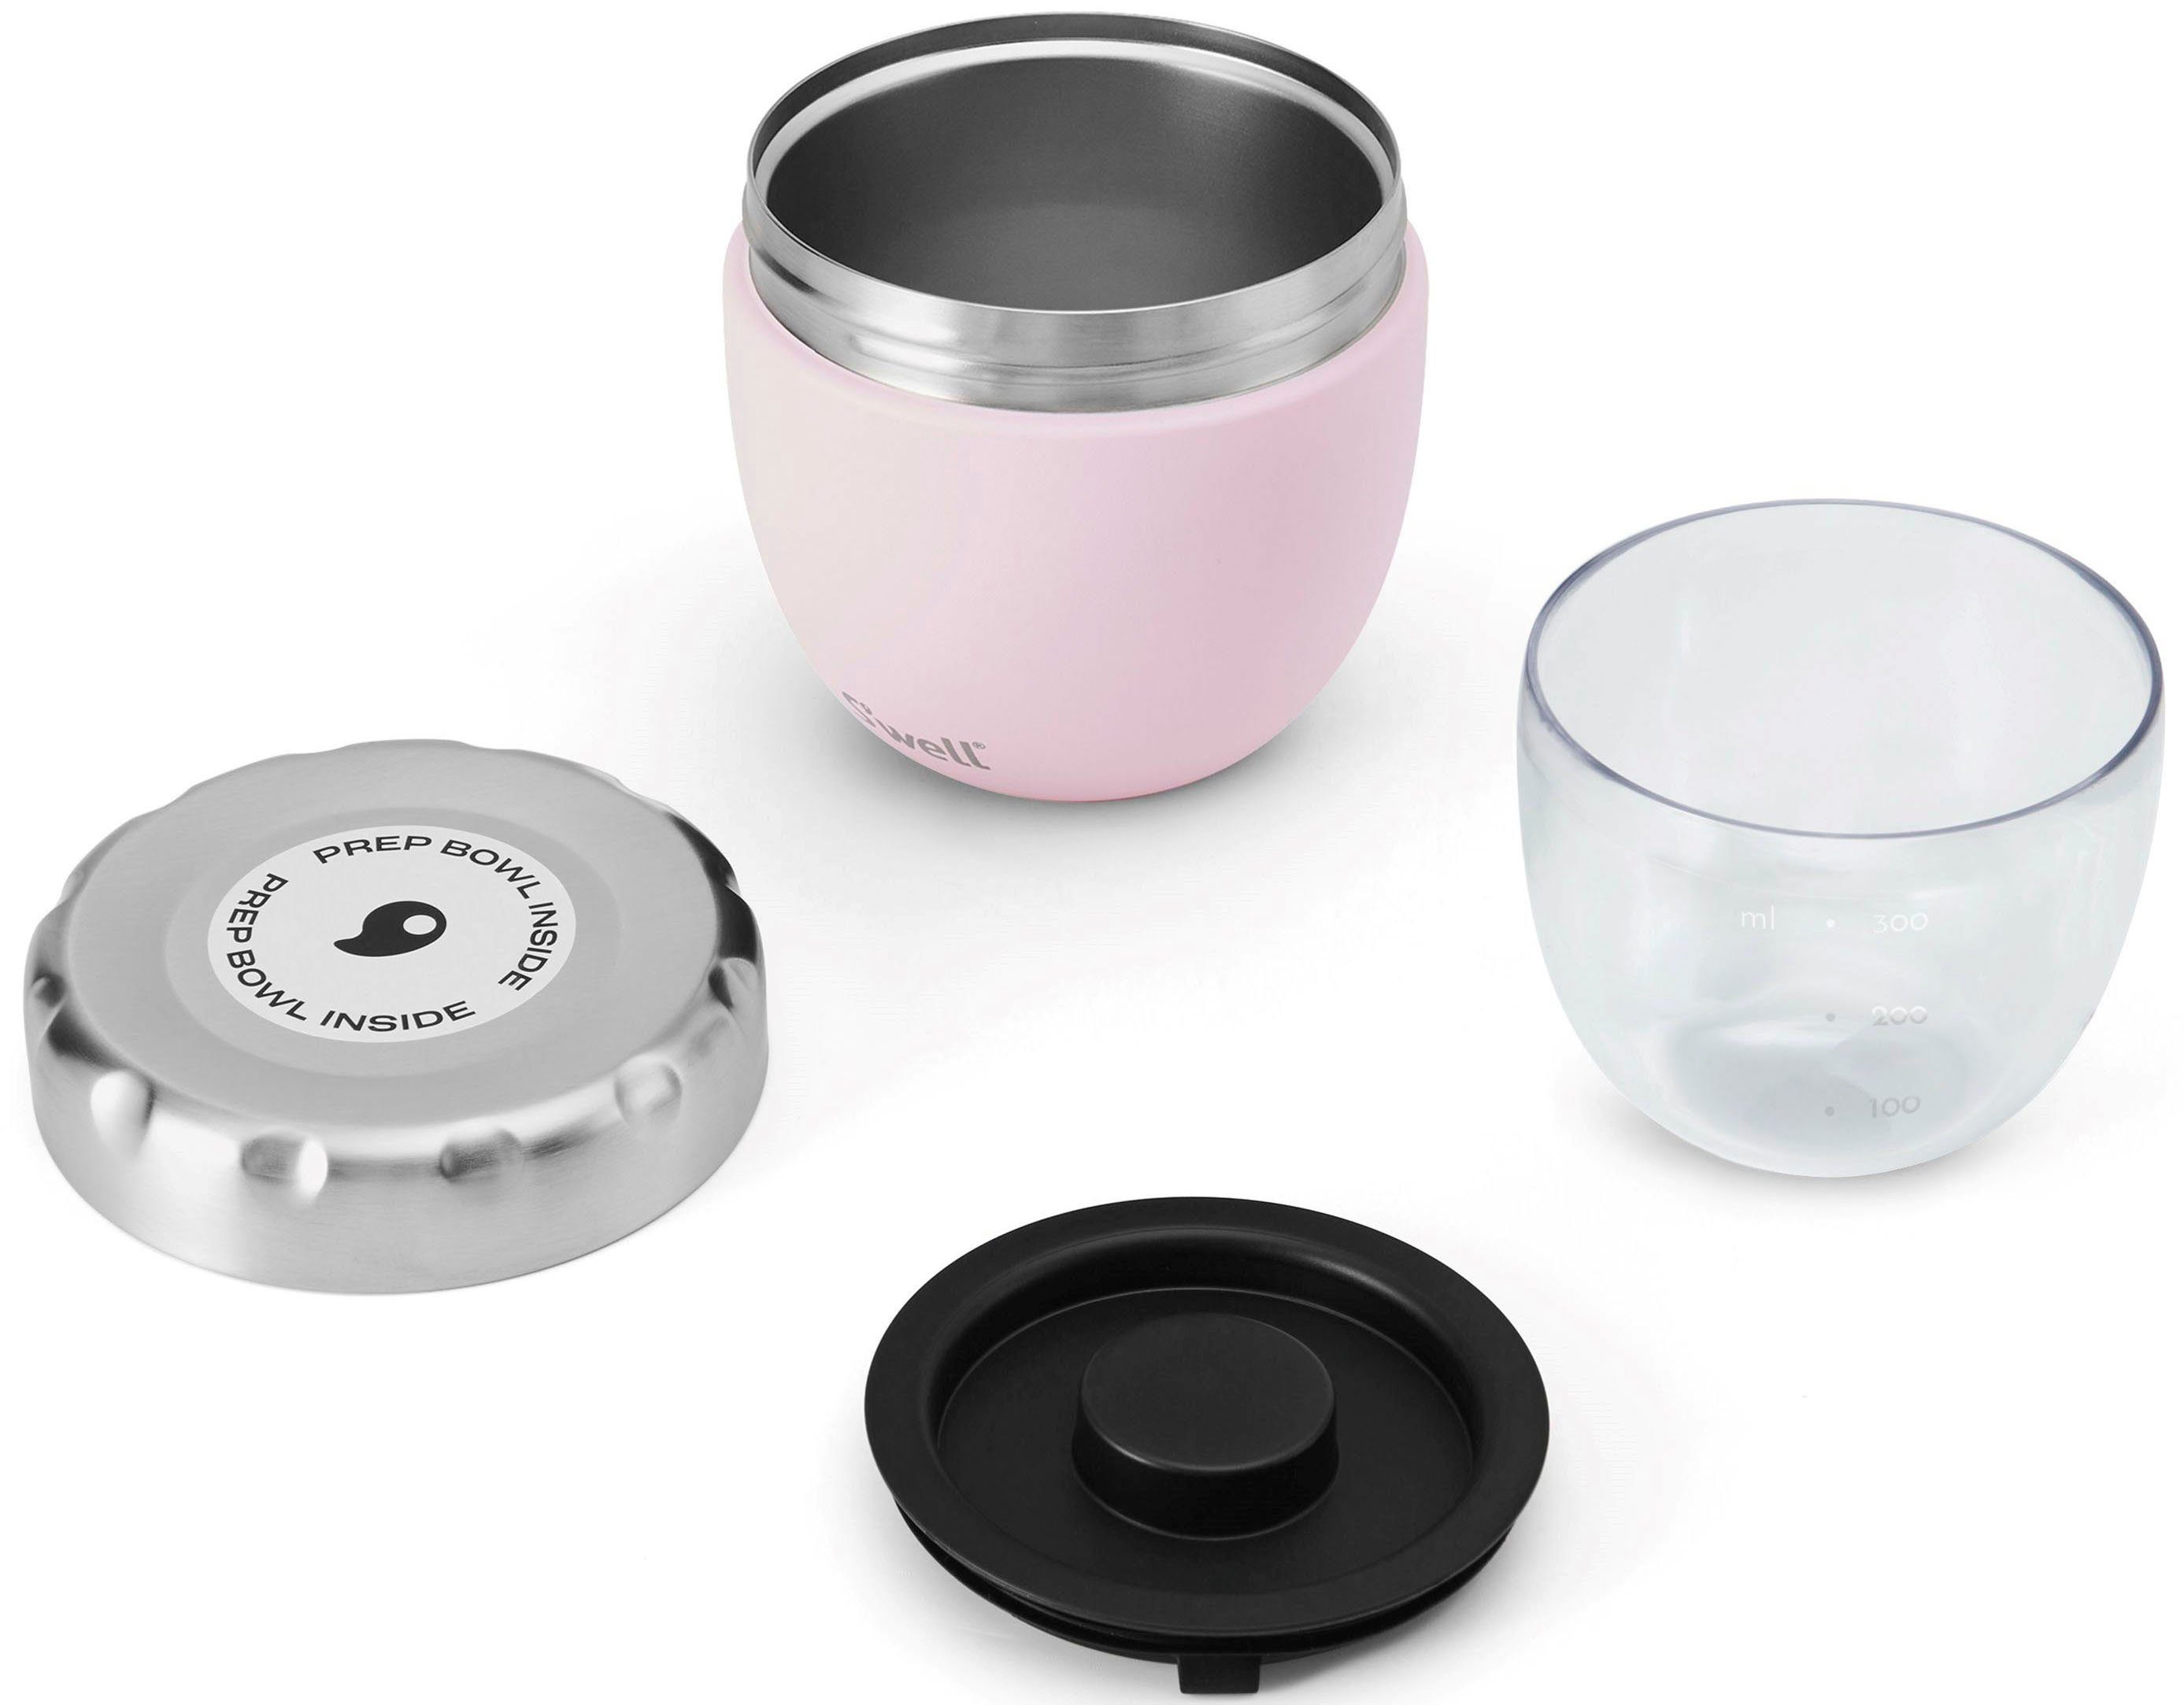 2-in-1 Thermoschüssel Topaz Food Außenschale Pink Therma-S'well®-Technologie Bowl, S’well (2-tlg), mit S'well Edelstahl, dreischichtiger Eats